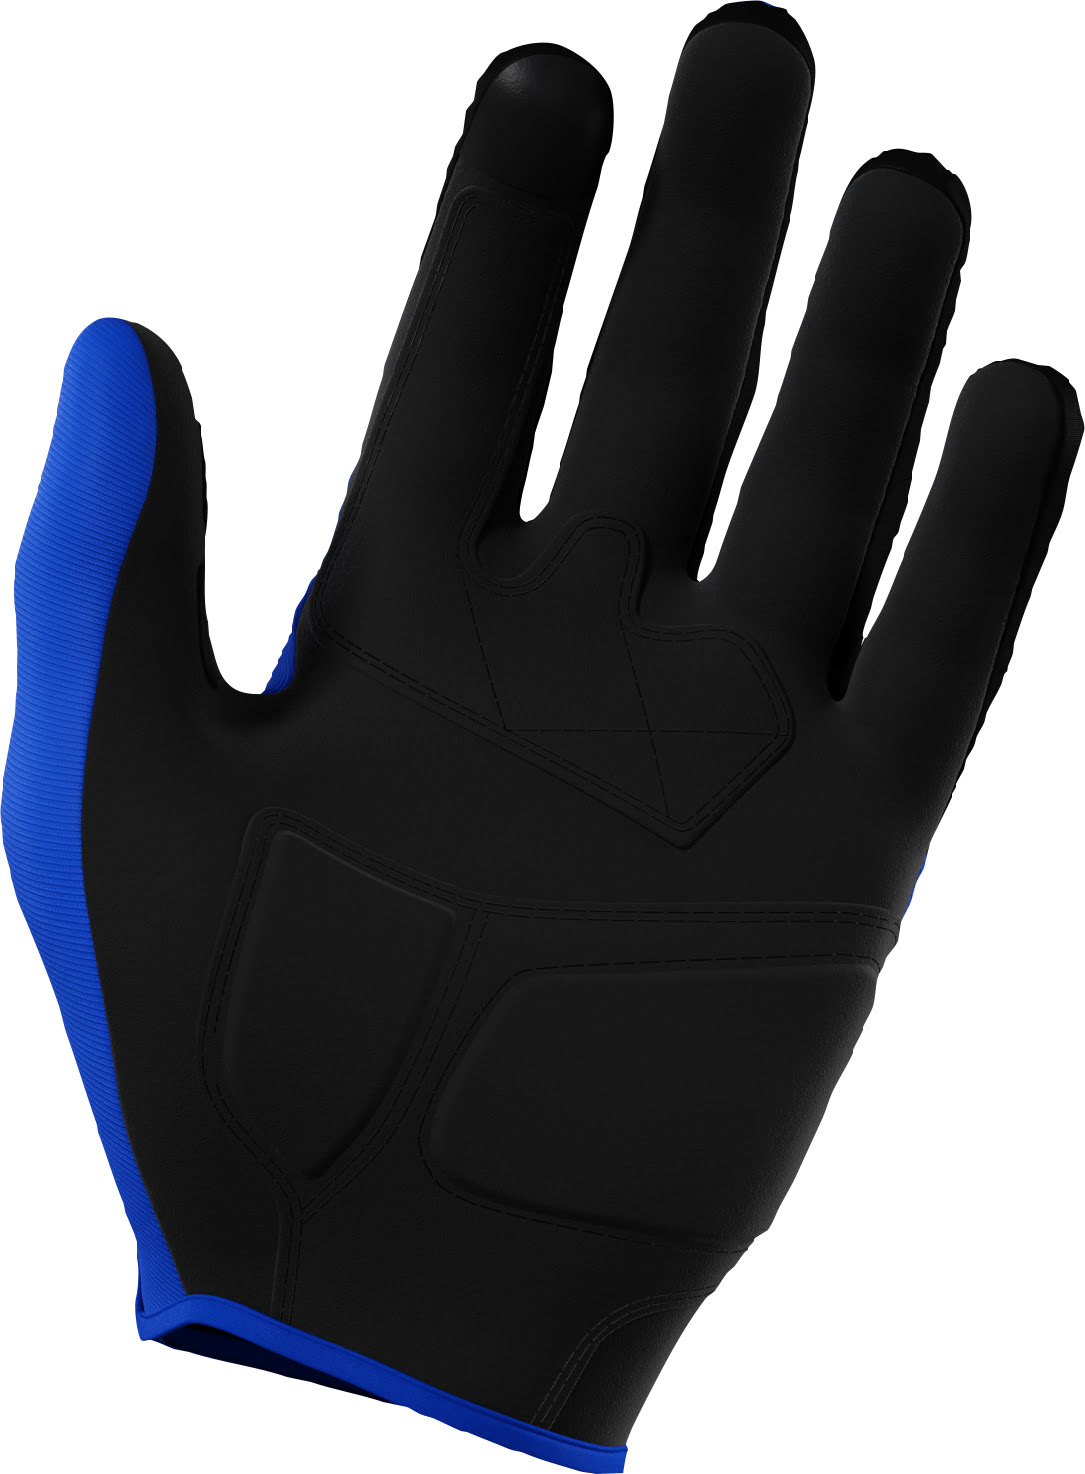 Gloves VISION Blue SHOT 